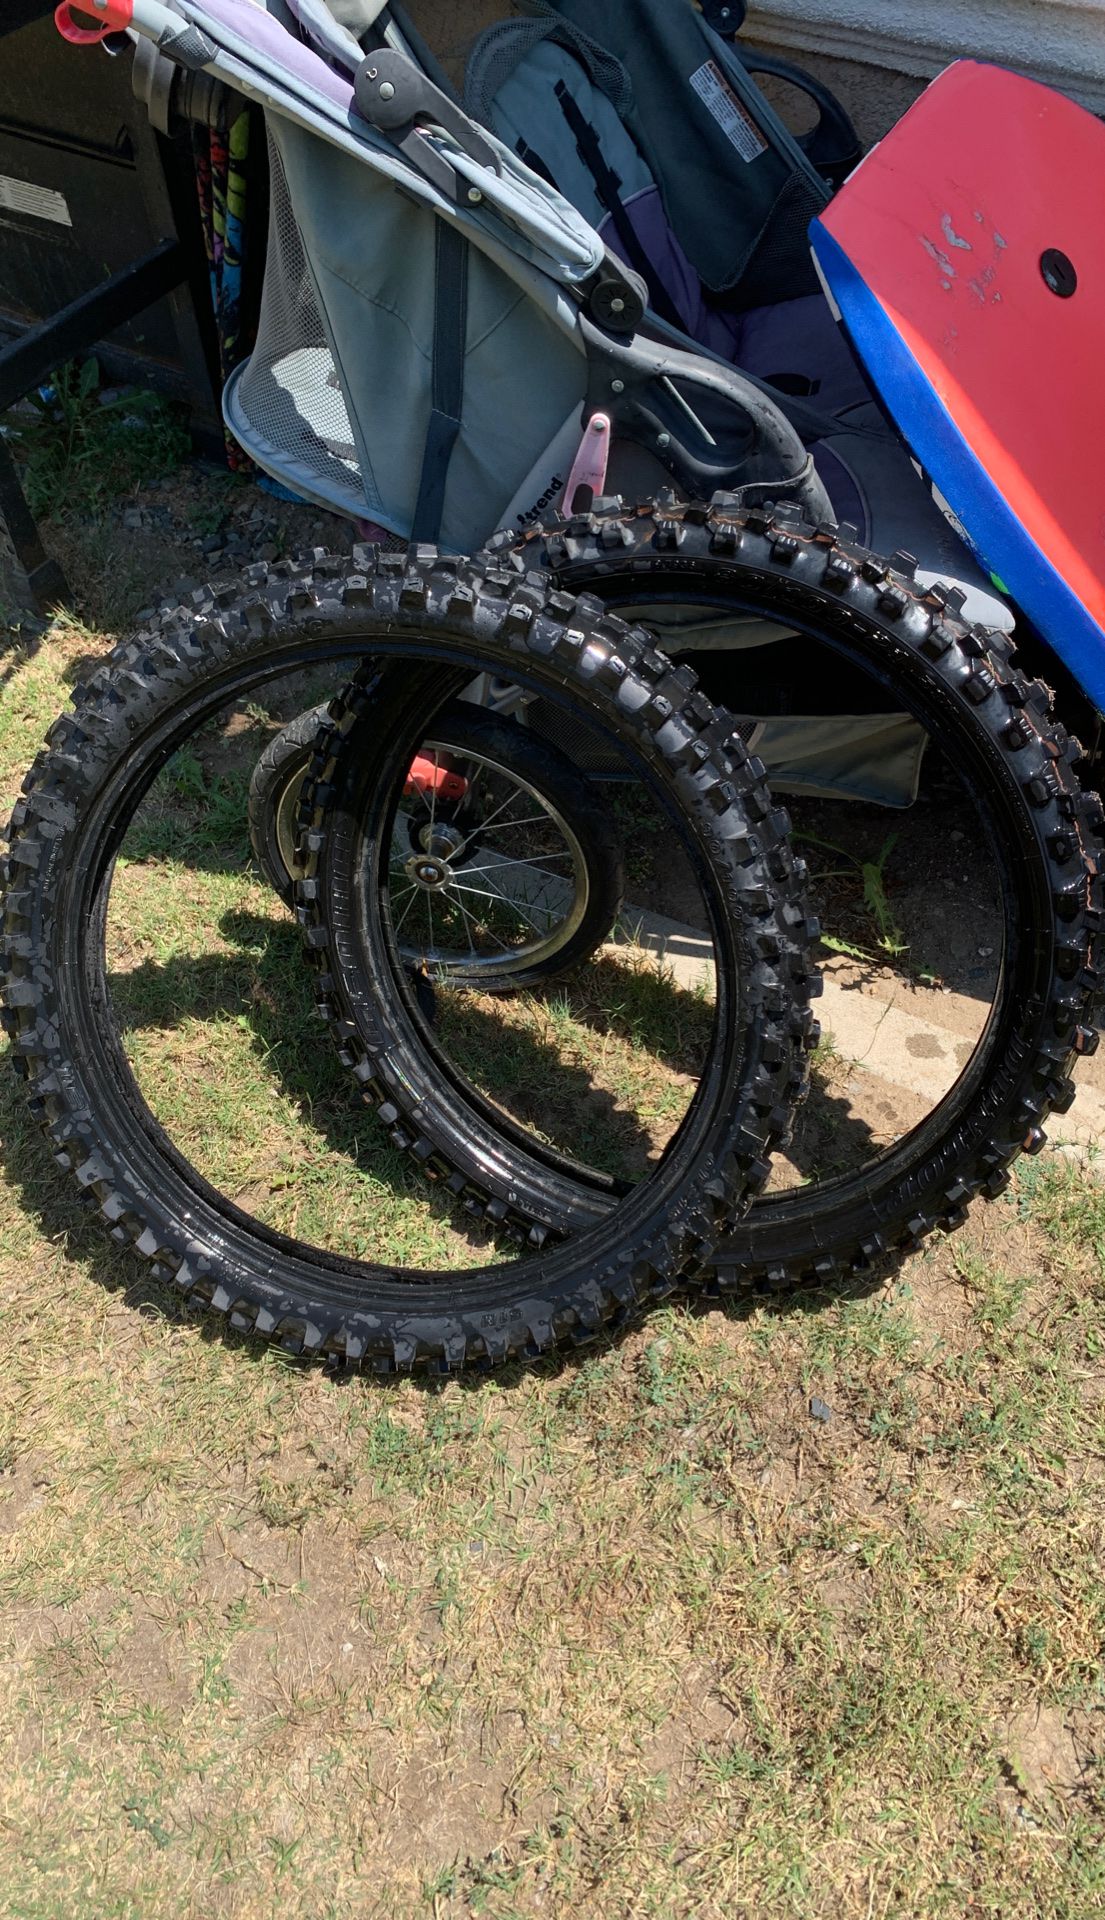 Dirtbike tires